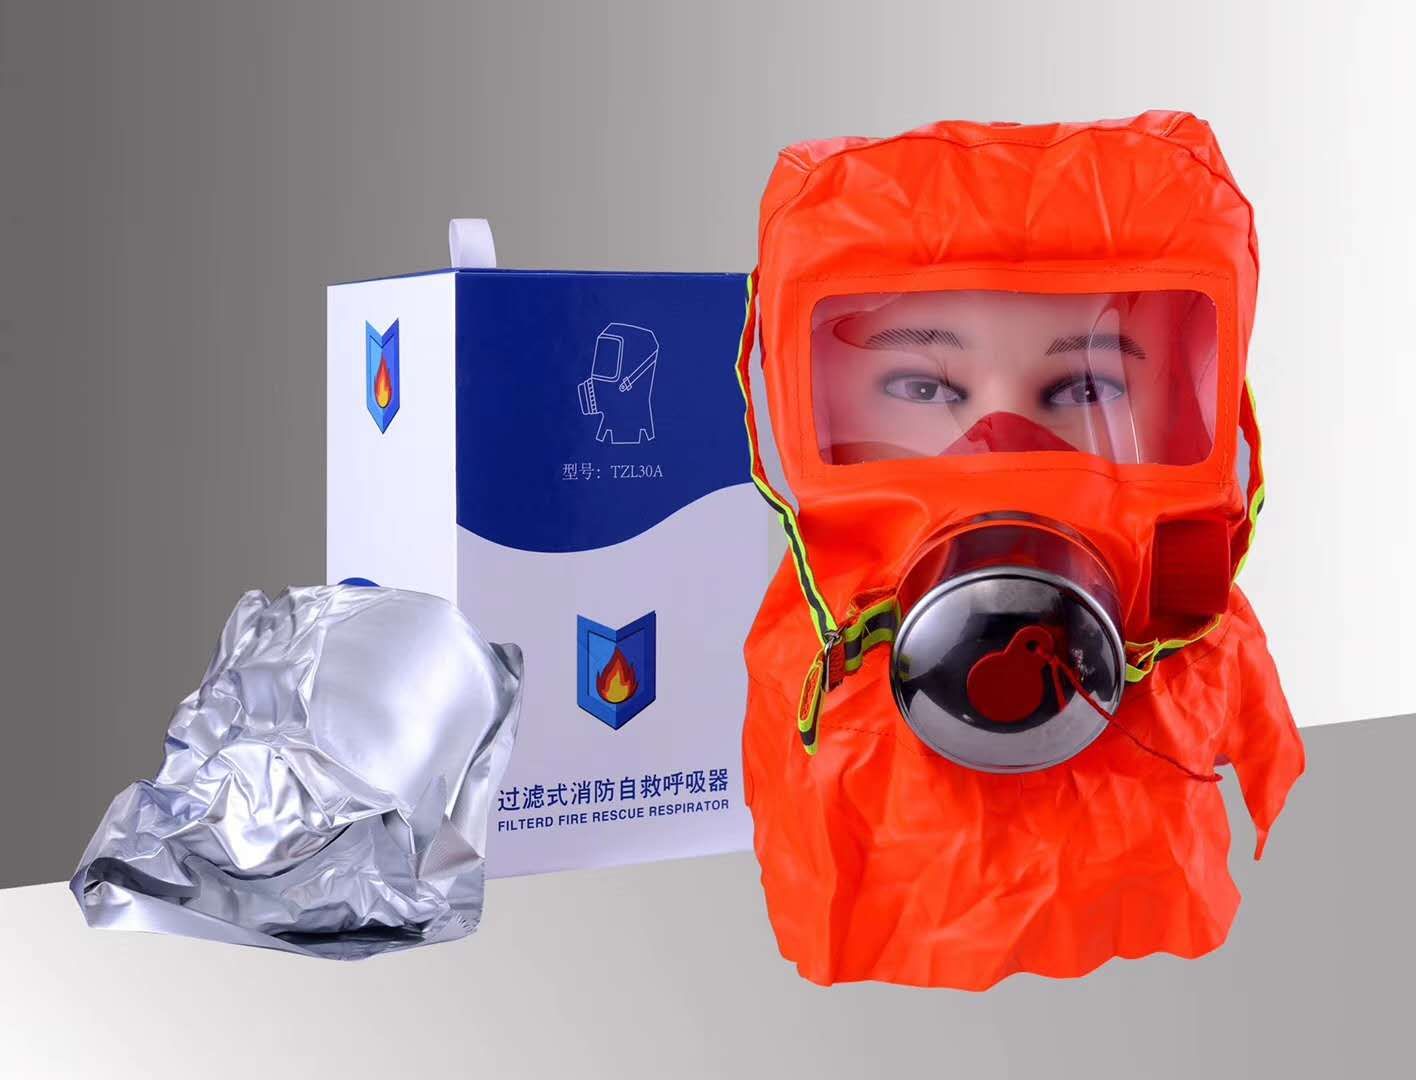 阻隔有害物质：防护消防面具，阻隔有毒气体和颗粒物